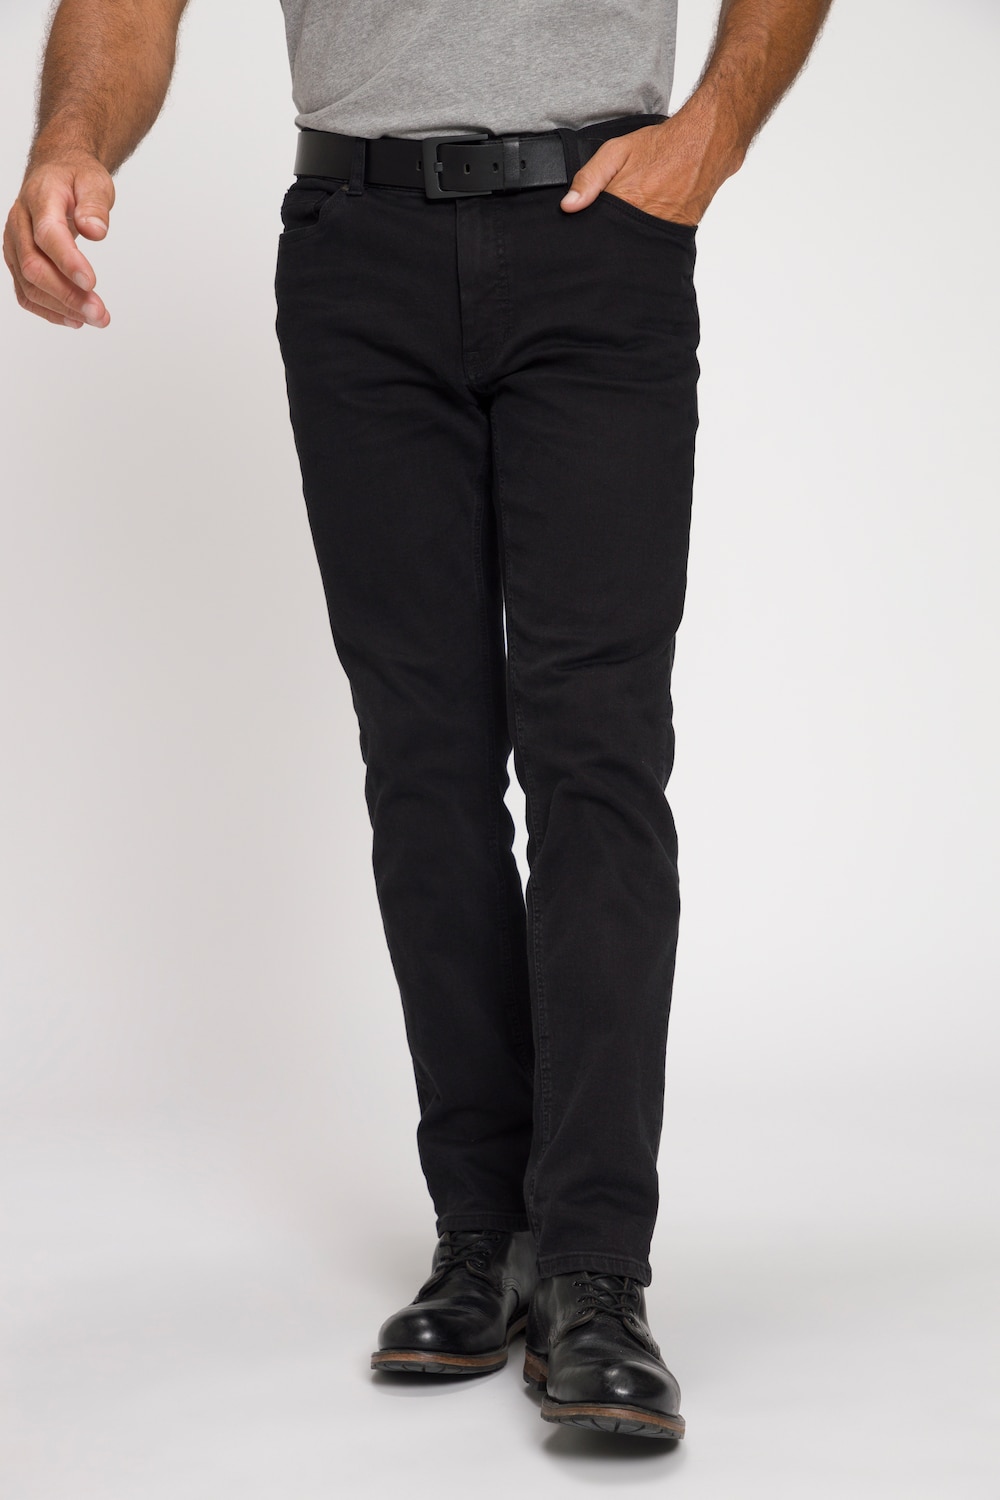 Große Größen Jeans, Herren, schwarz, Größe: 29, Baumwolle, JP1880